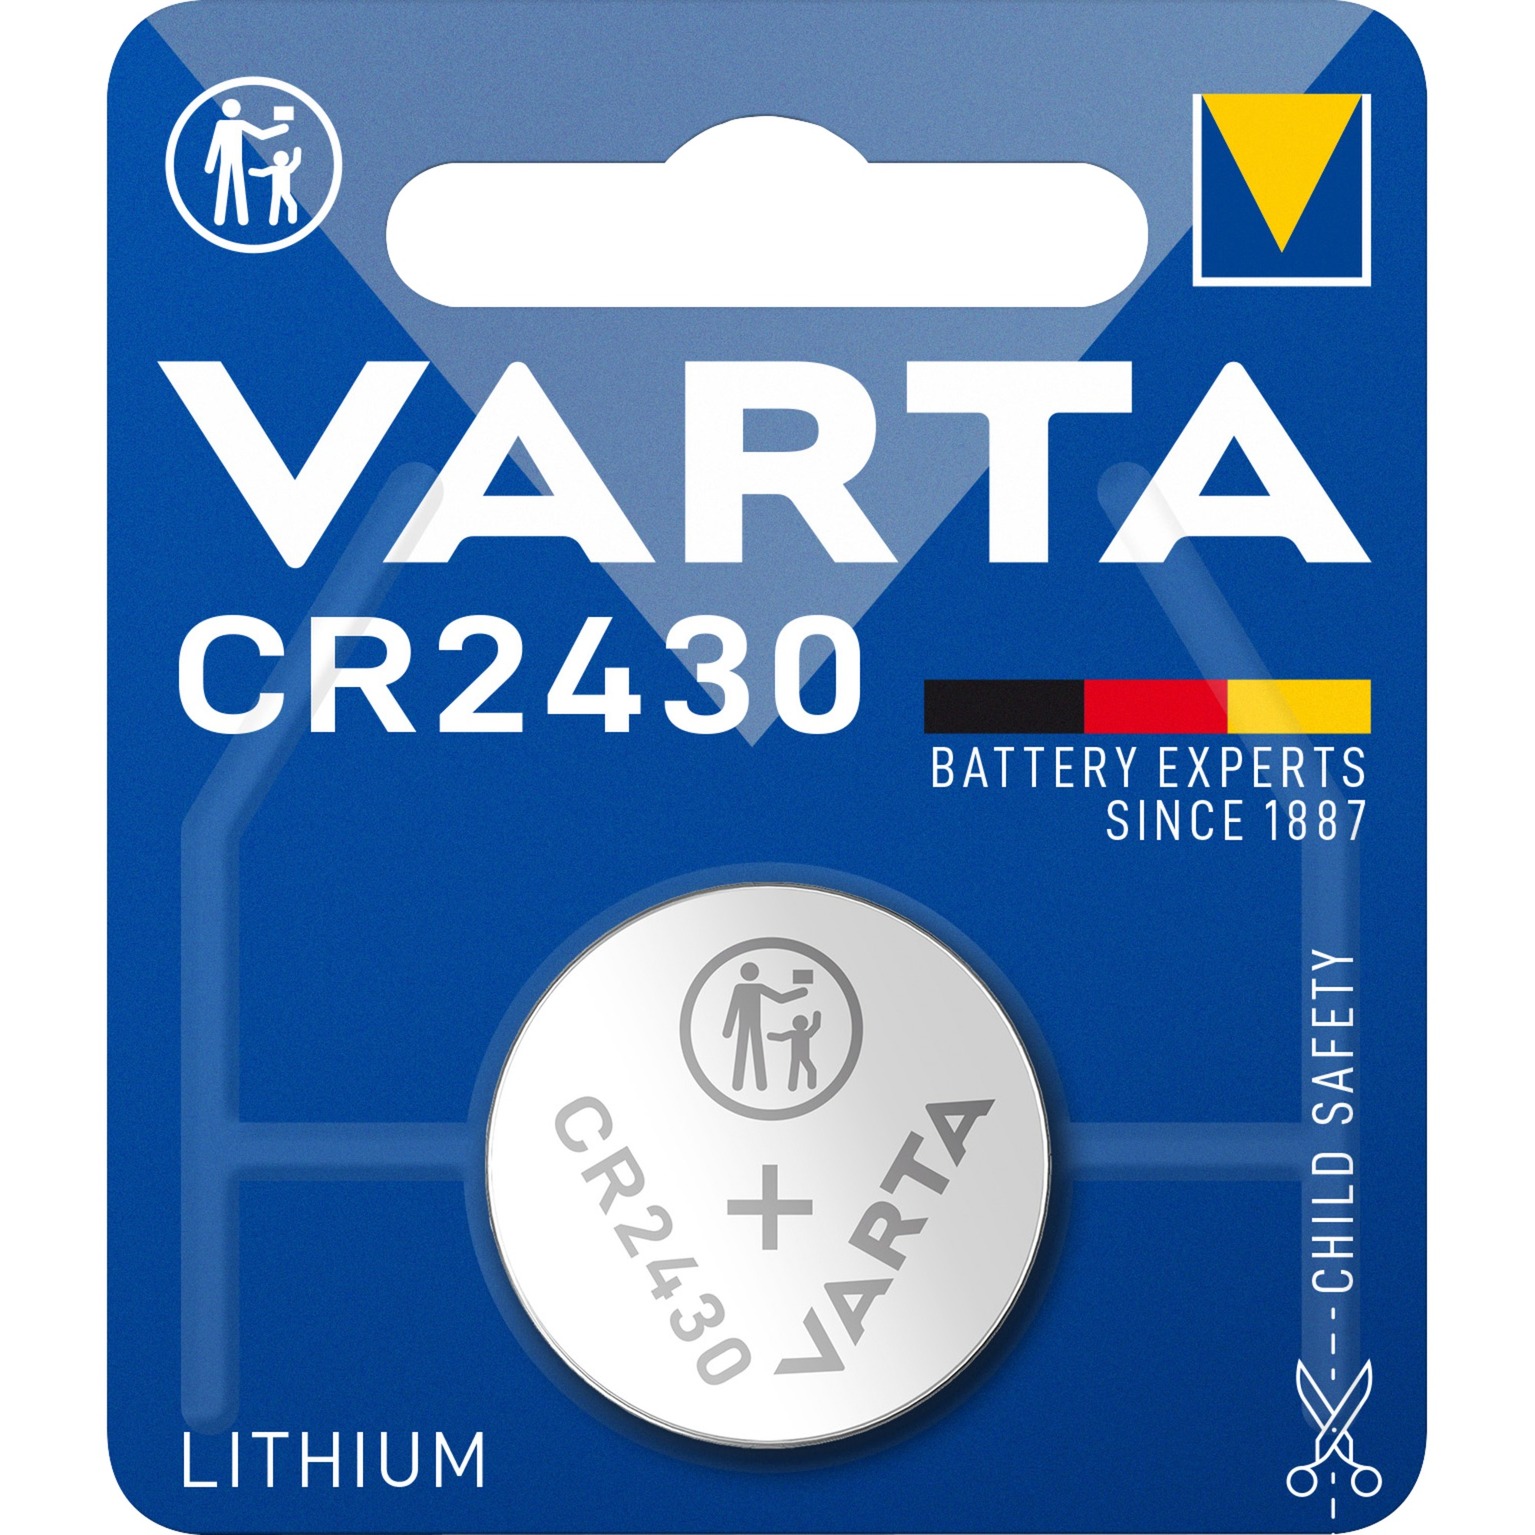 Image of Alternate - LITHIUM Coin CR2430, Batterie online einkaufen bei Alternate